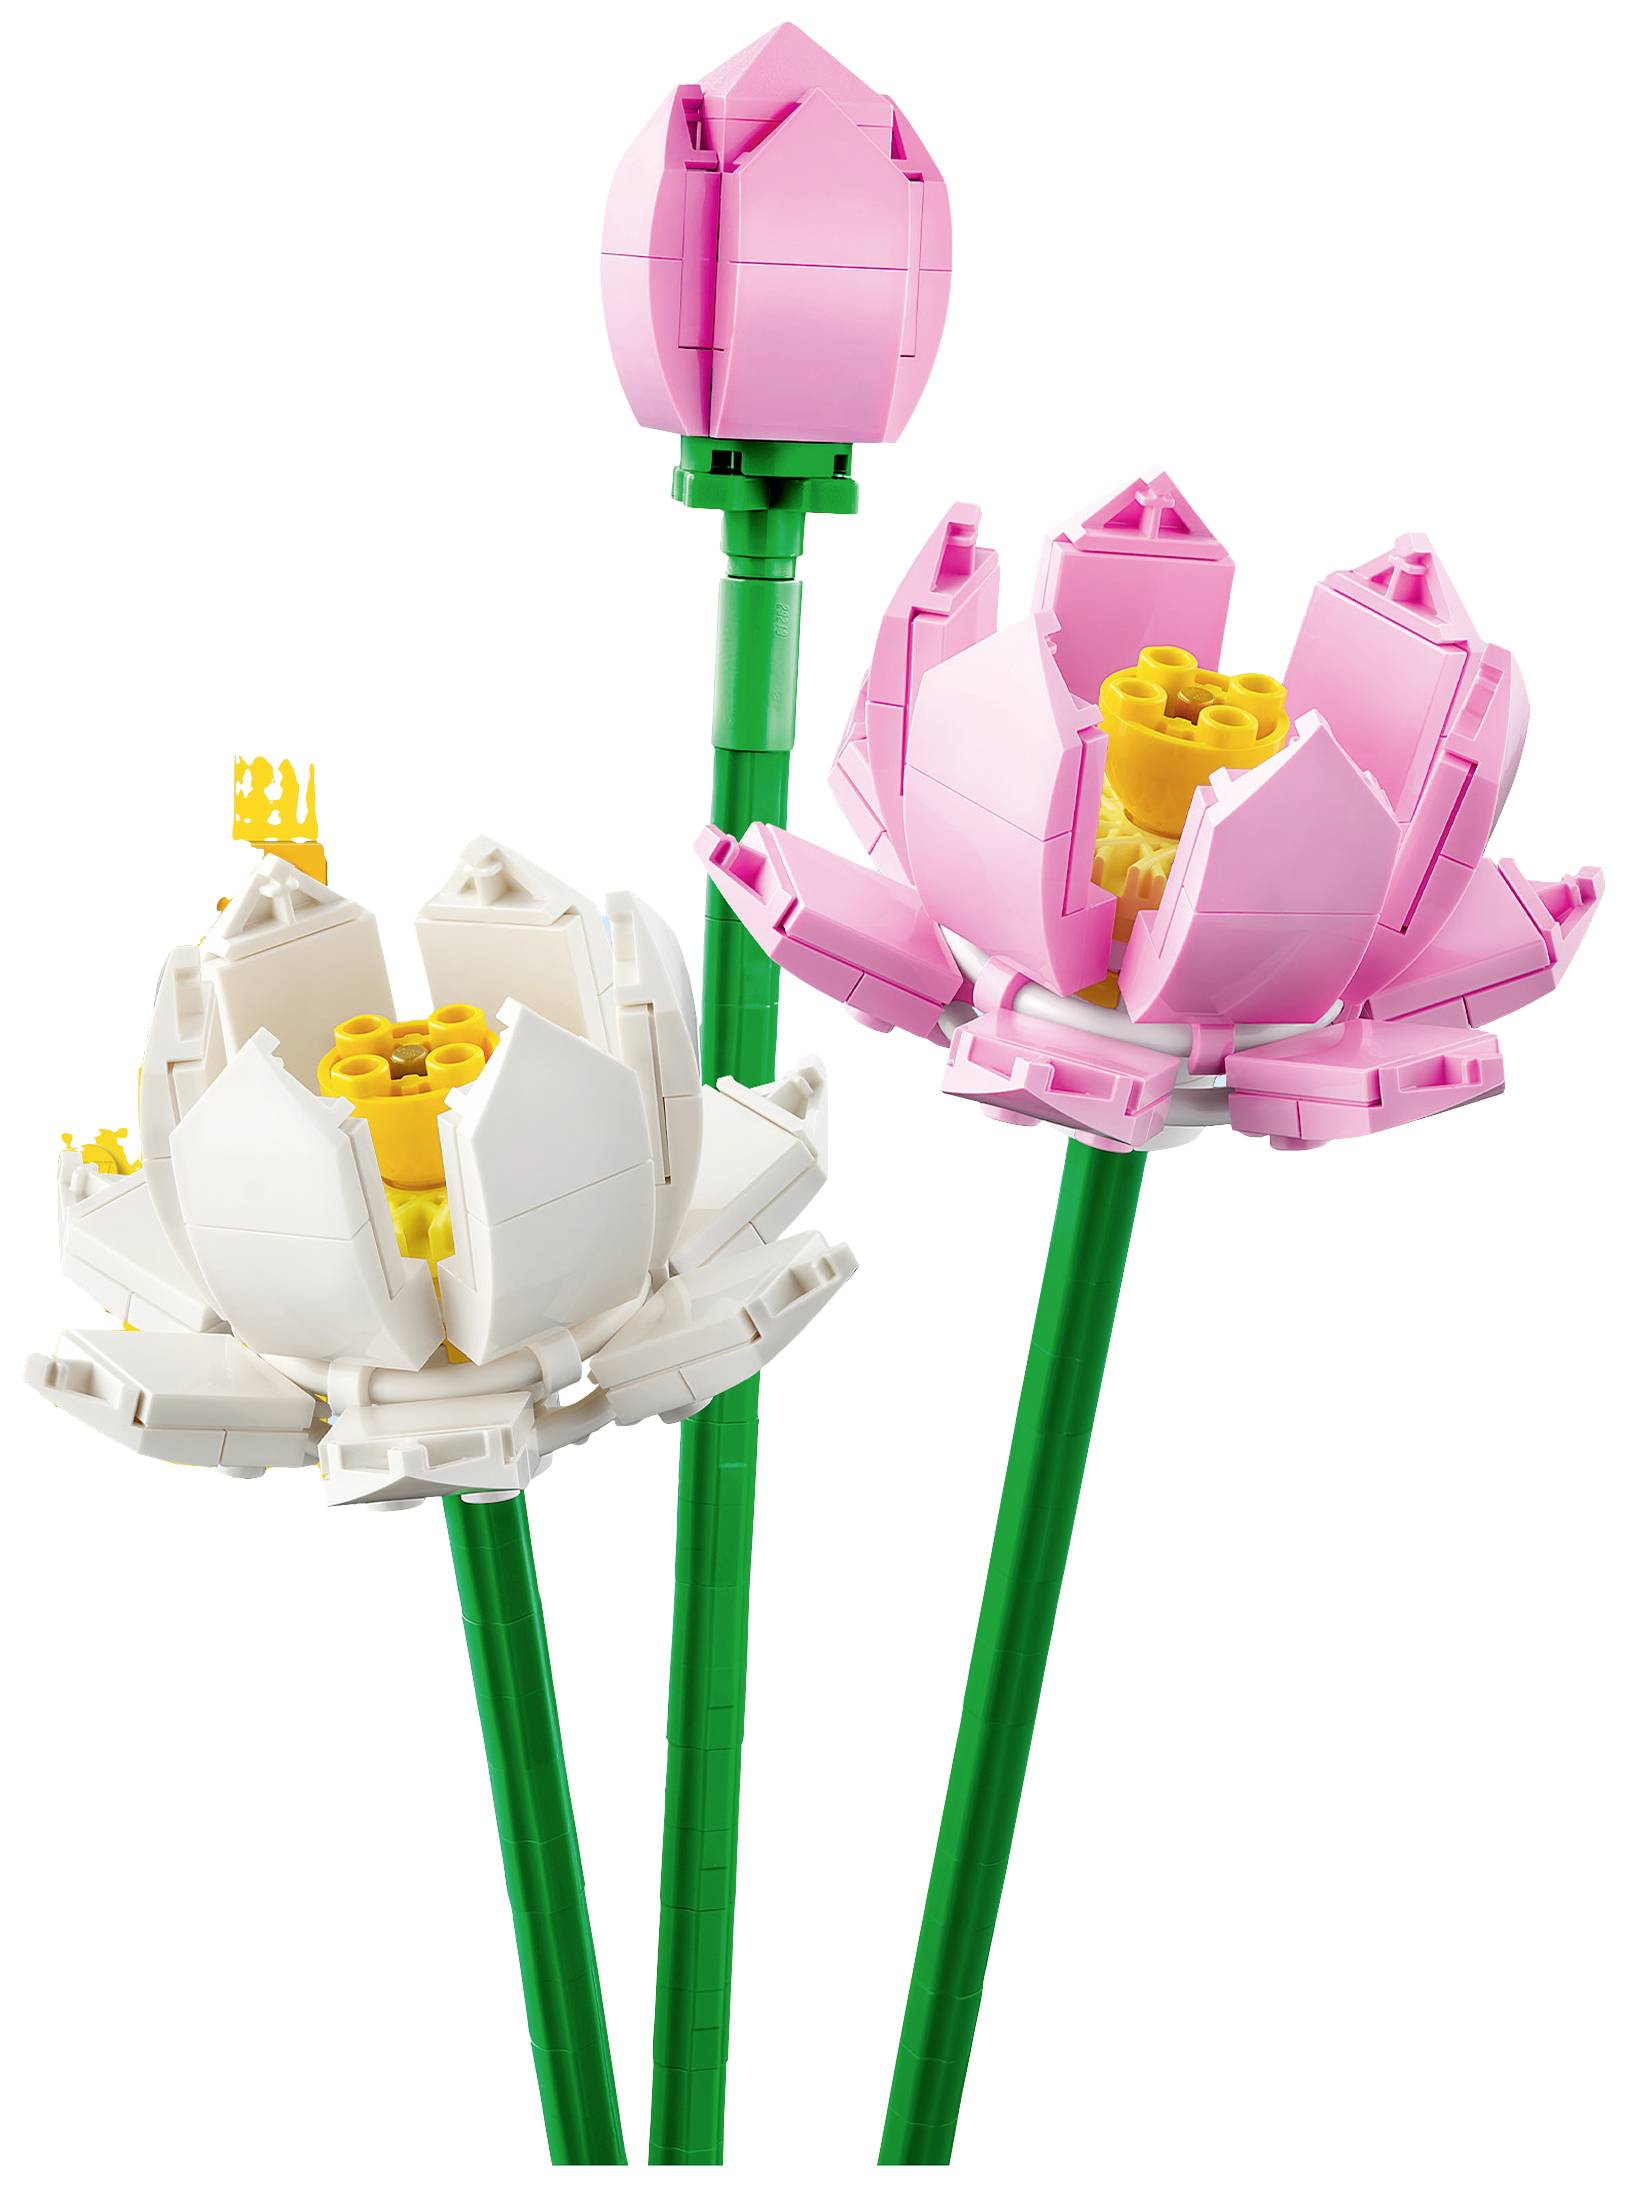 LEGO 40647 Les fleurs de lotus (Icons) (Botanical Collection